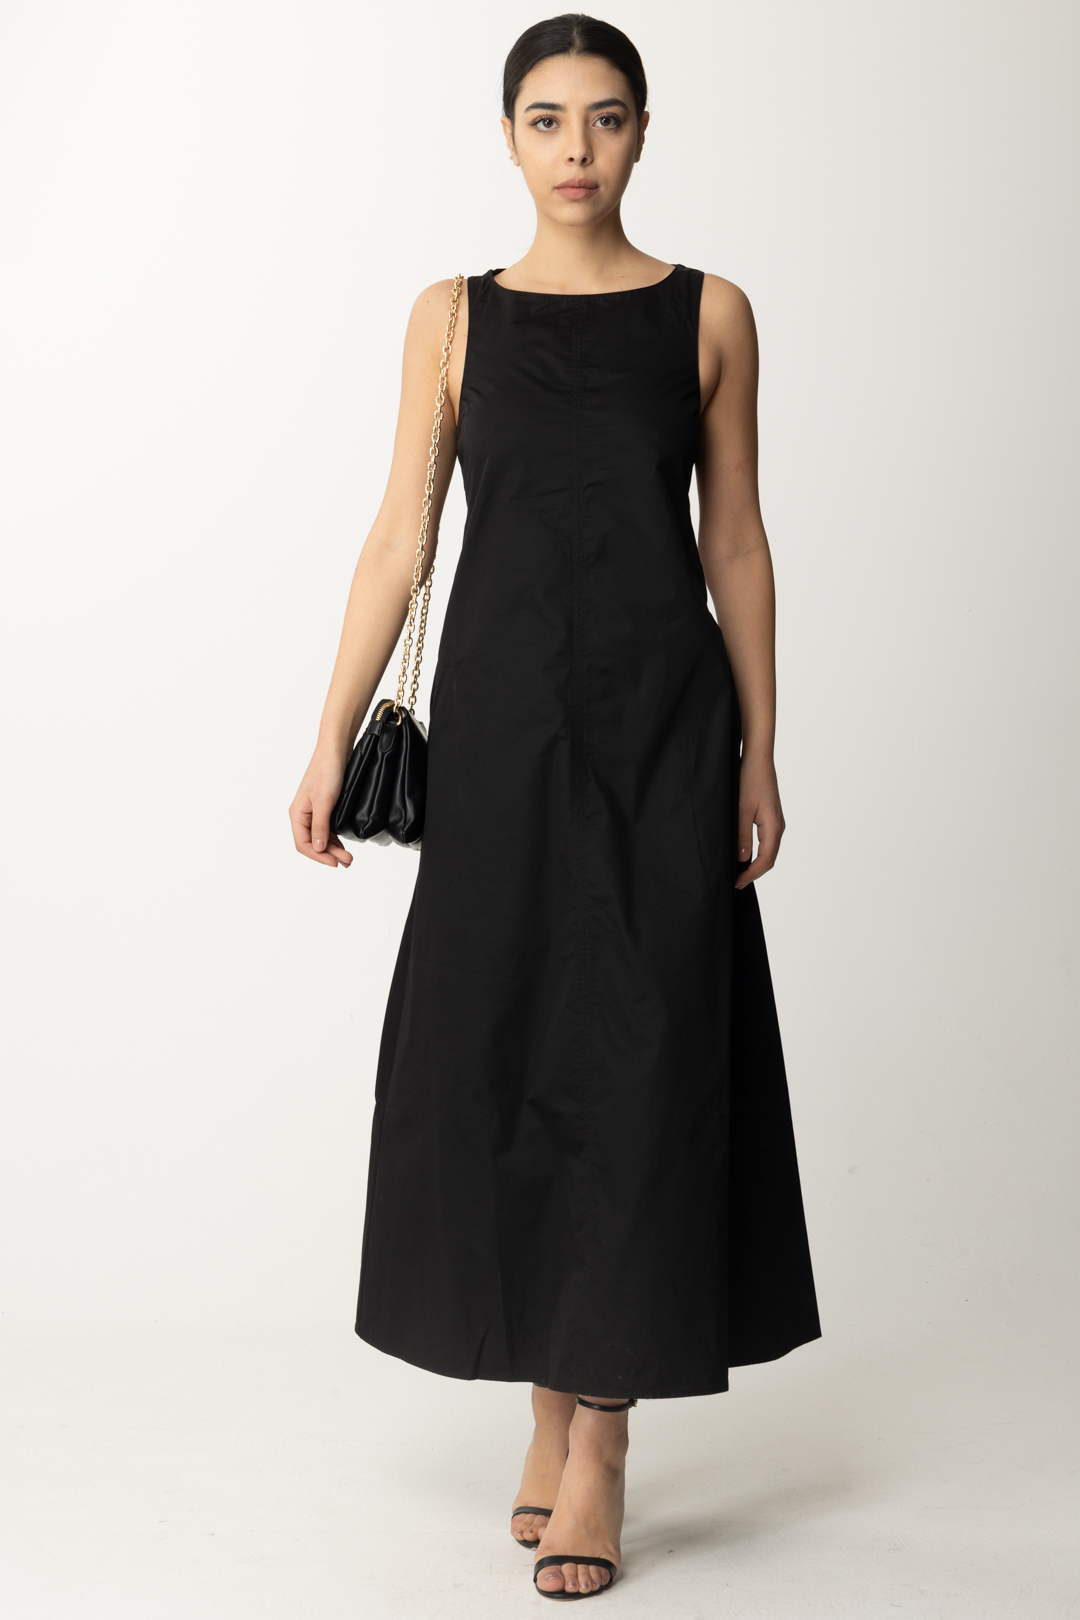 Vorschau: Replay Ausgestelltes Kleid mit Ausschnitt auf der Rückseite Black